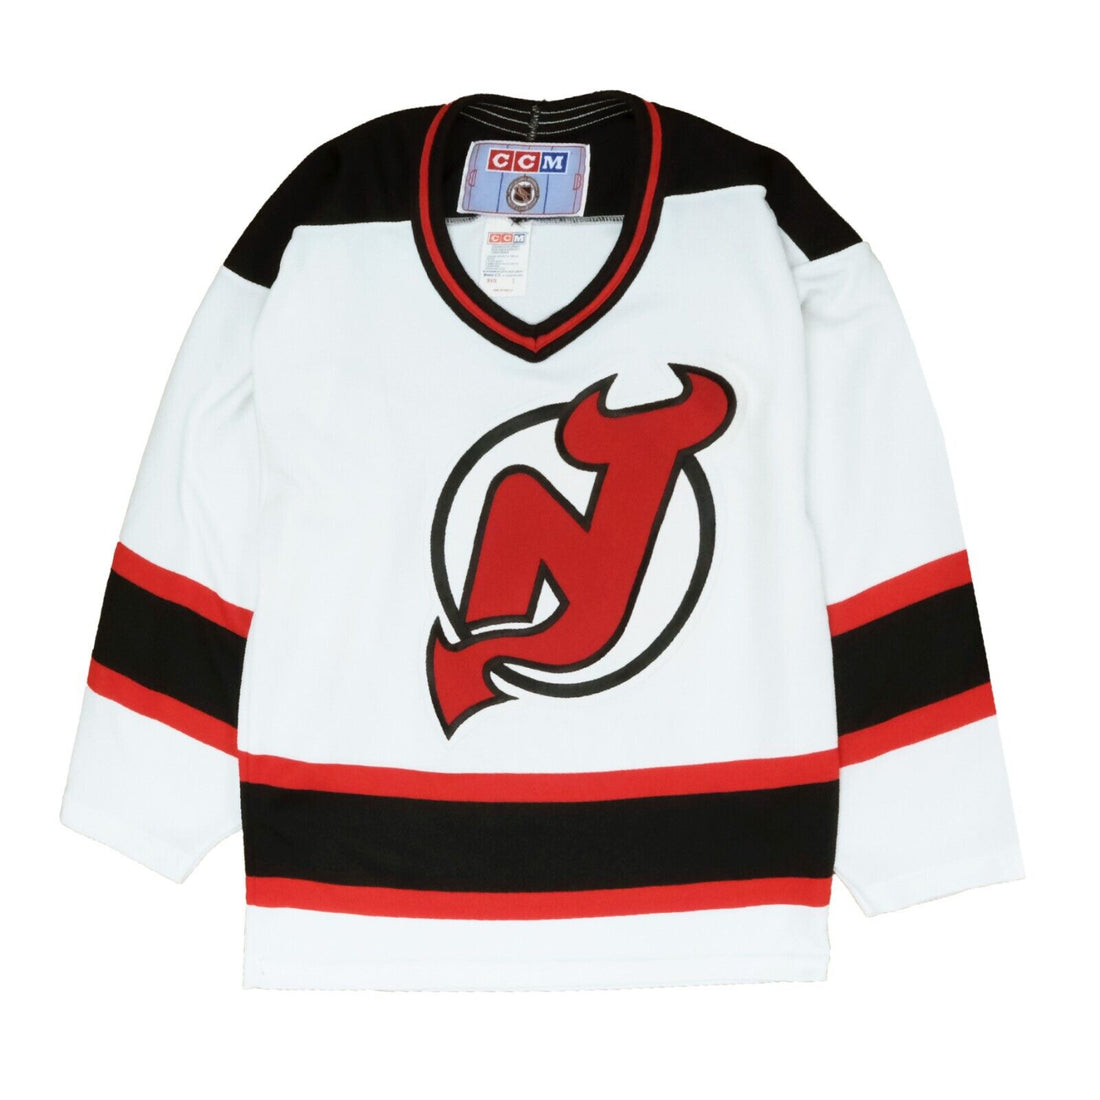 NHL, Shirts, Vintage Nhl New Jersey Devils Hockey Jersey Size Small